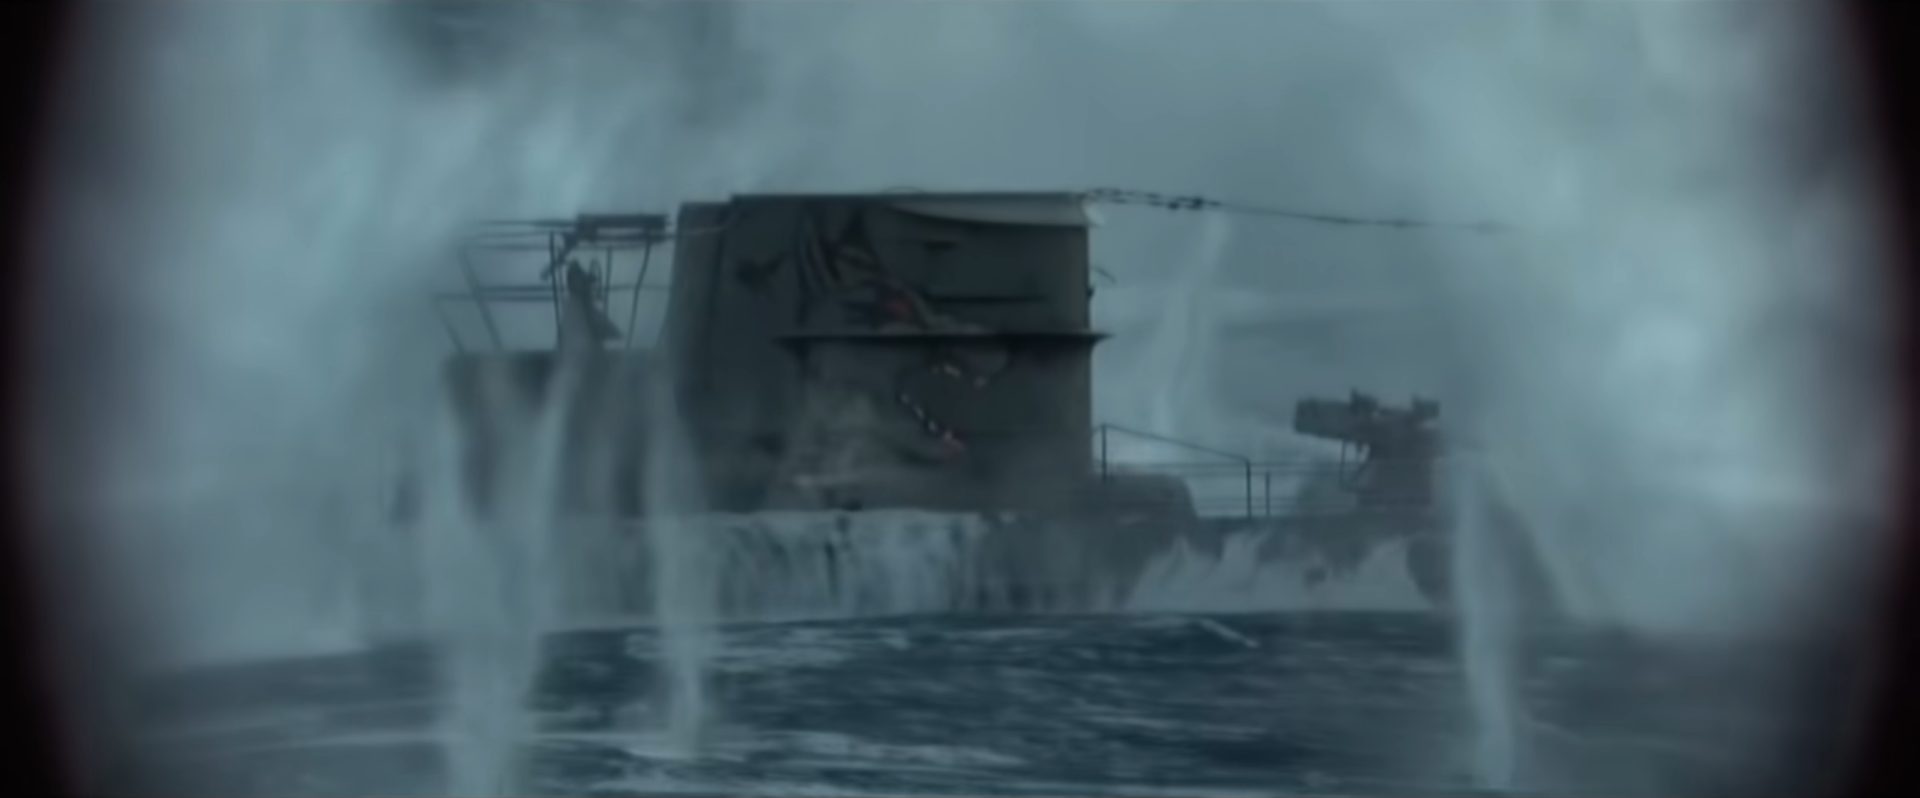 Turm eines aufgetauchten U-Bootes unter heftigem Beschuss inmitten großer Detonationsfontänen; als Emblem erkennt man den Kopf eines aggressiv wirkenden Wolfs.